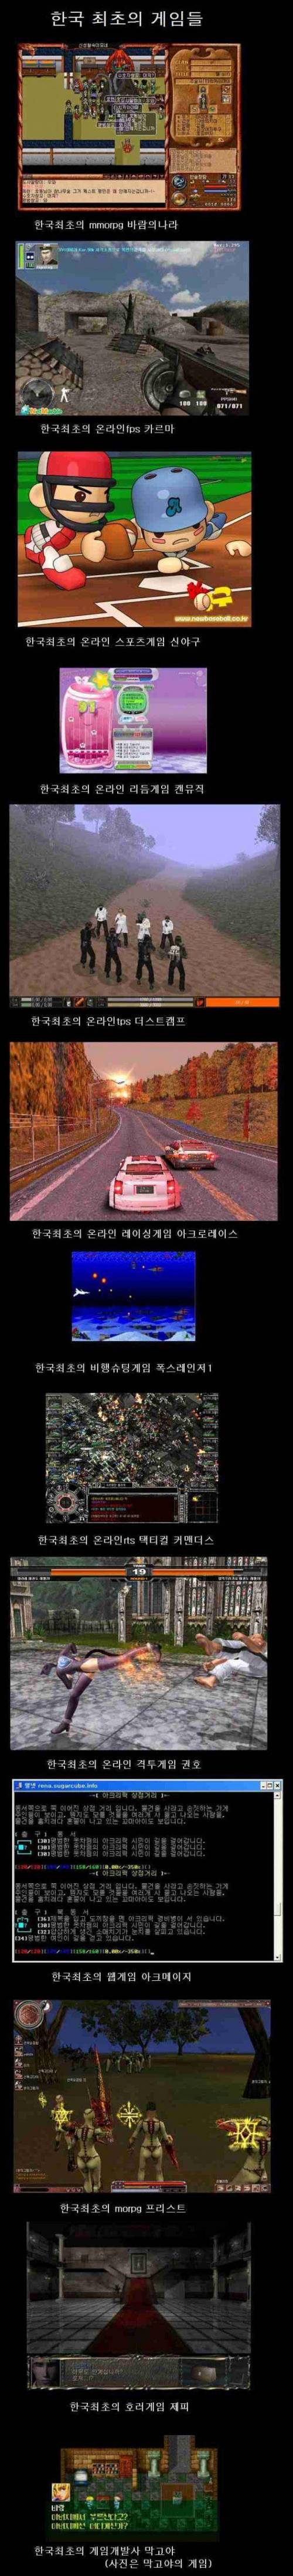 2 한국 최초의 기록을 가진 여러 가지 게임들.jpg